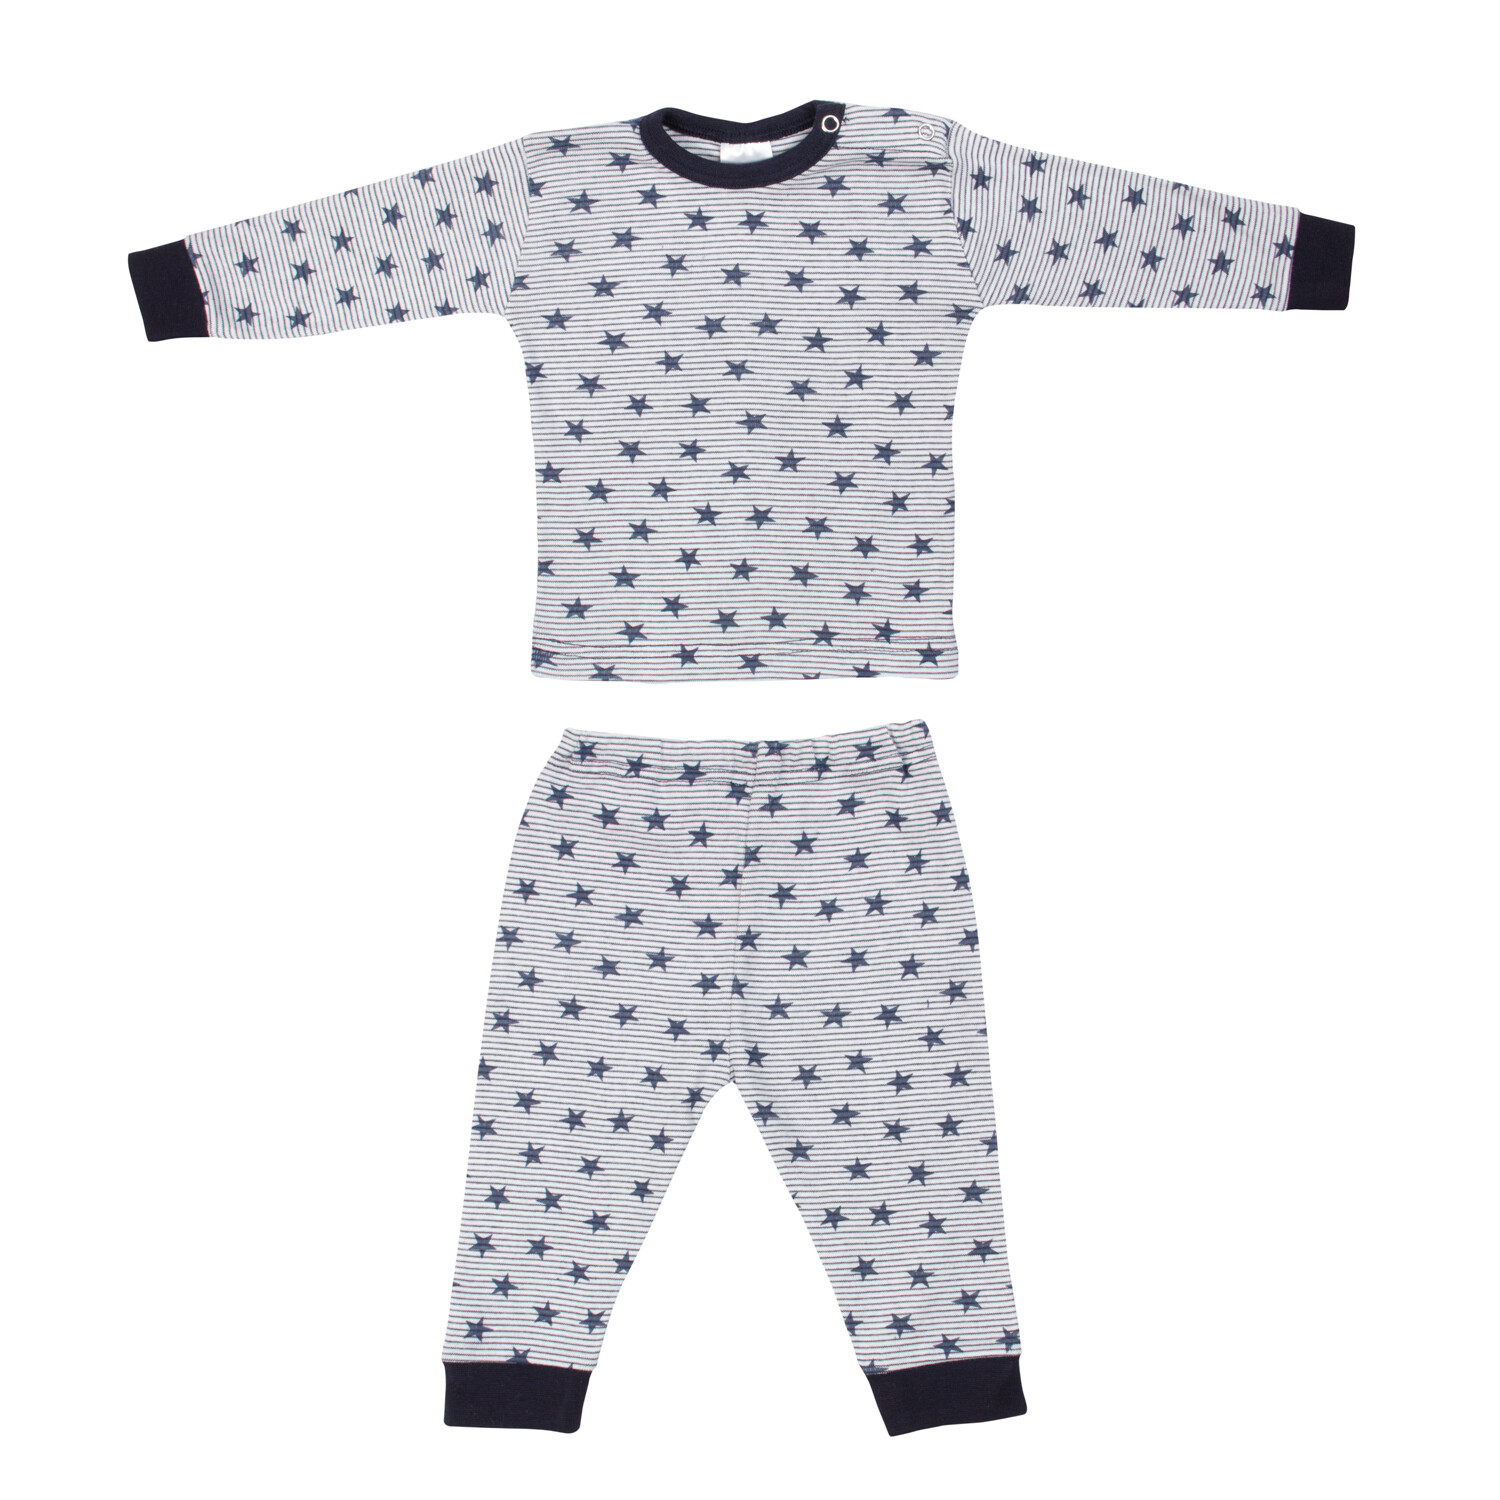 (24-019) Baby pyjama Stripe star marine 50/56